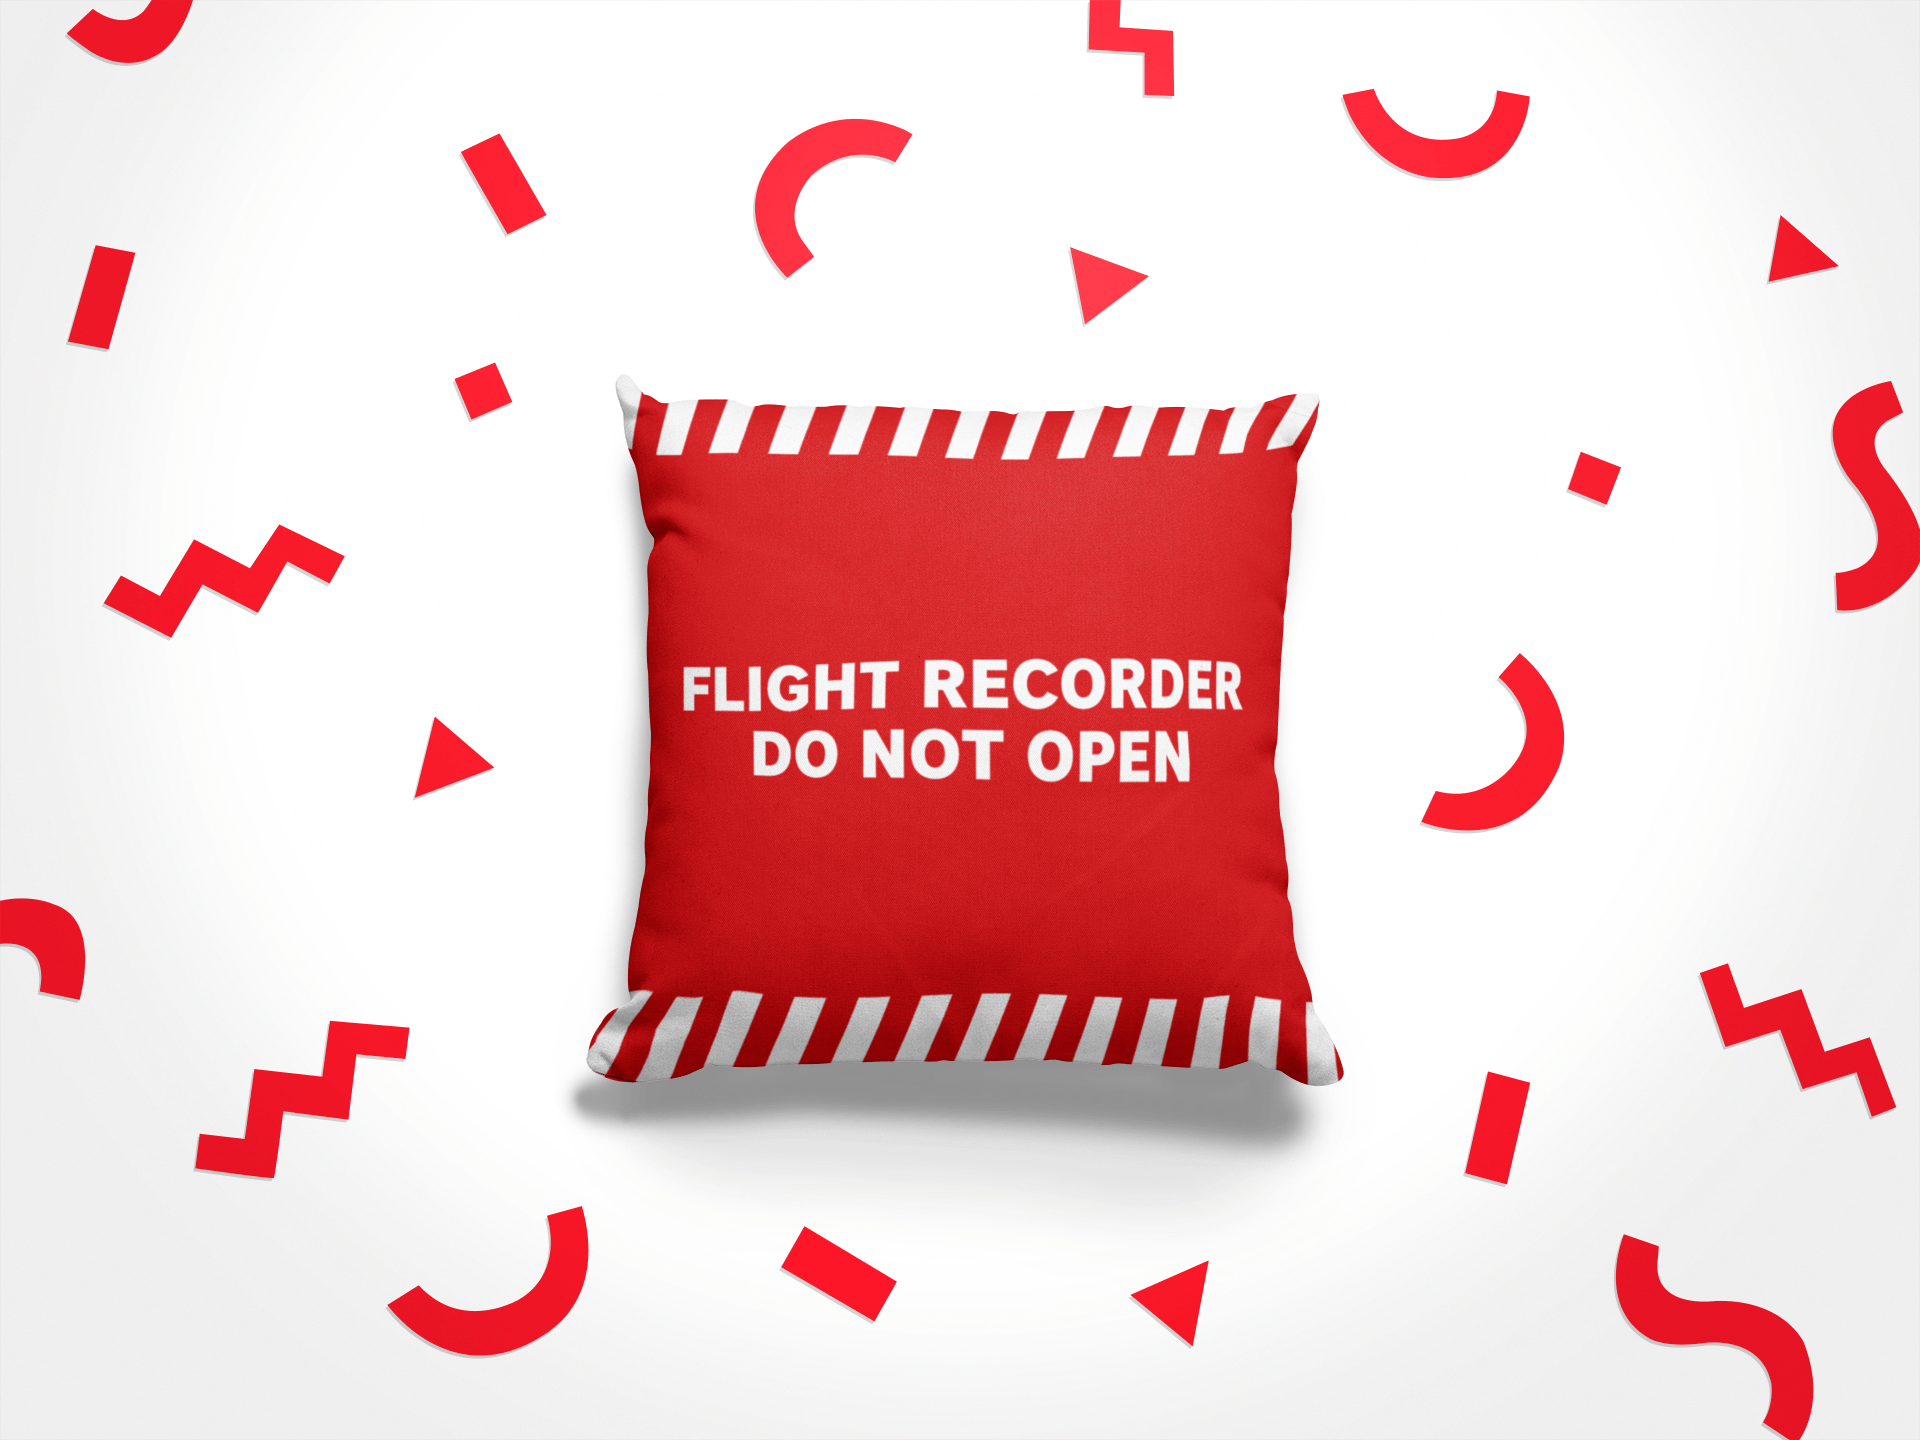 FlightRecorder Pillow - 25center.com